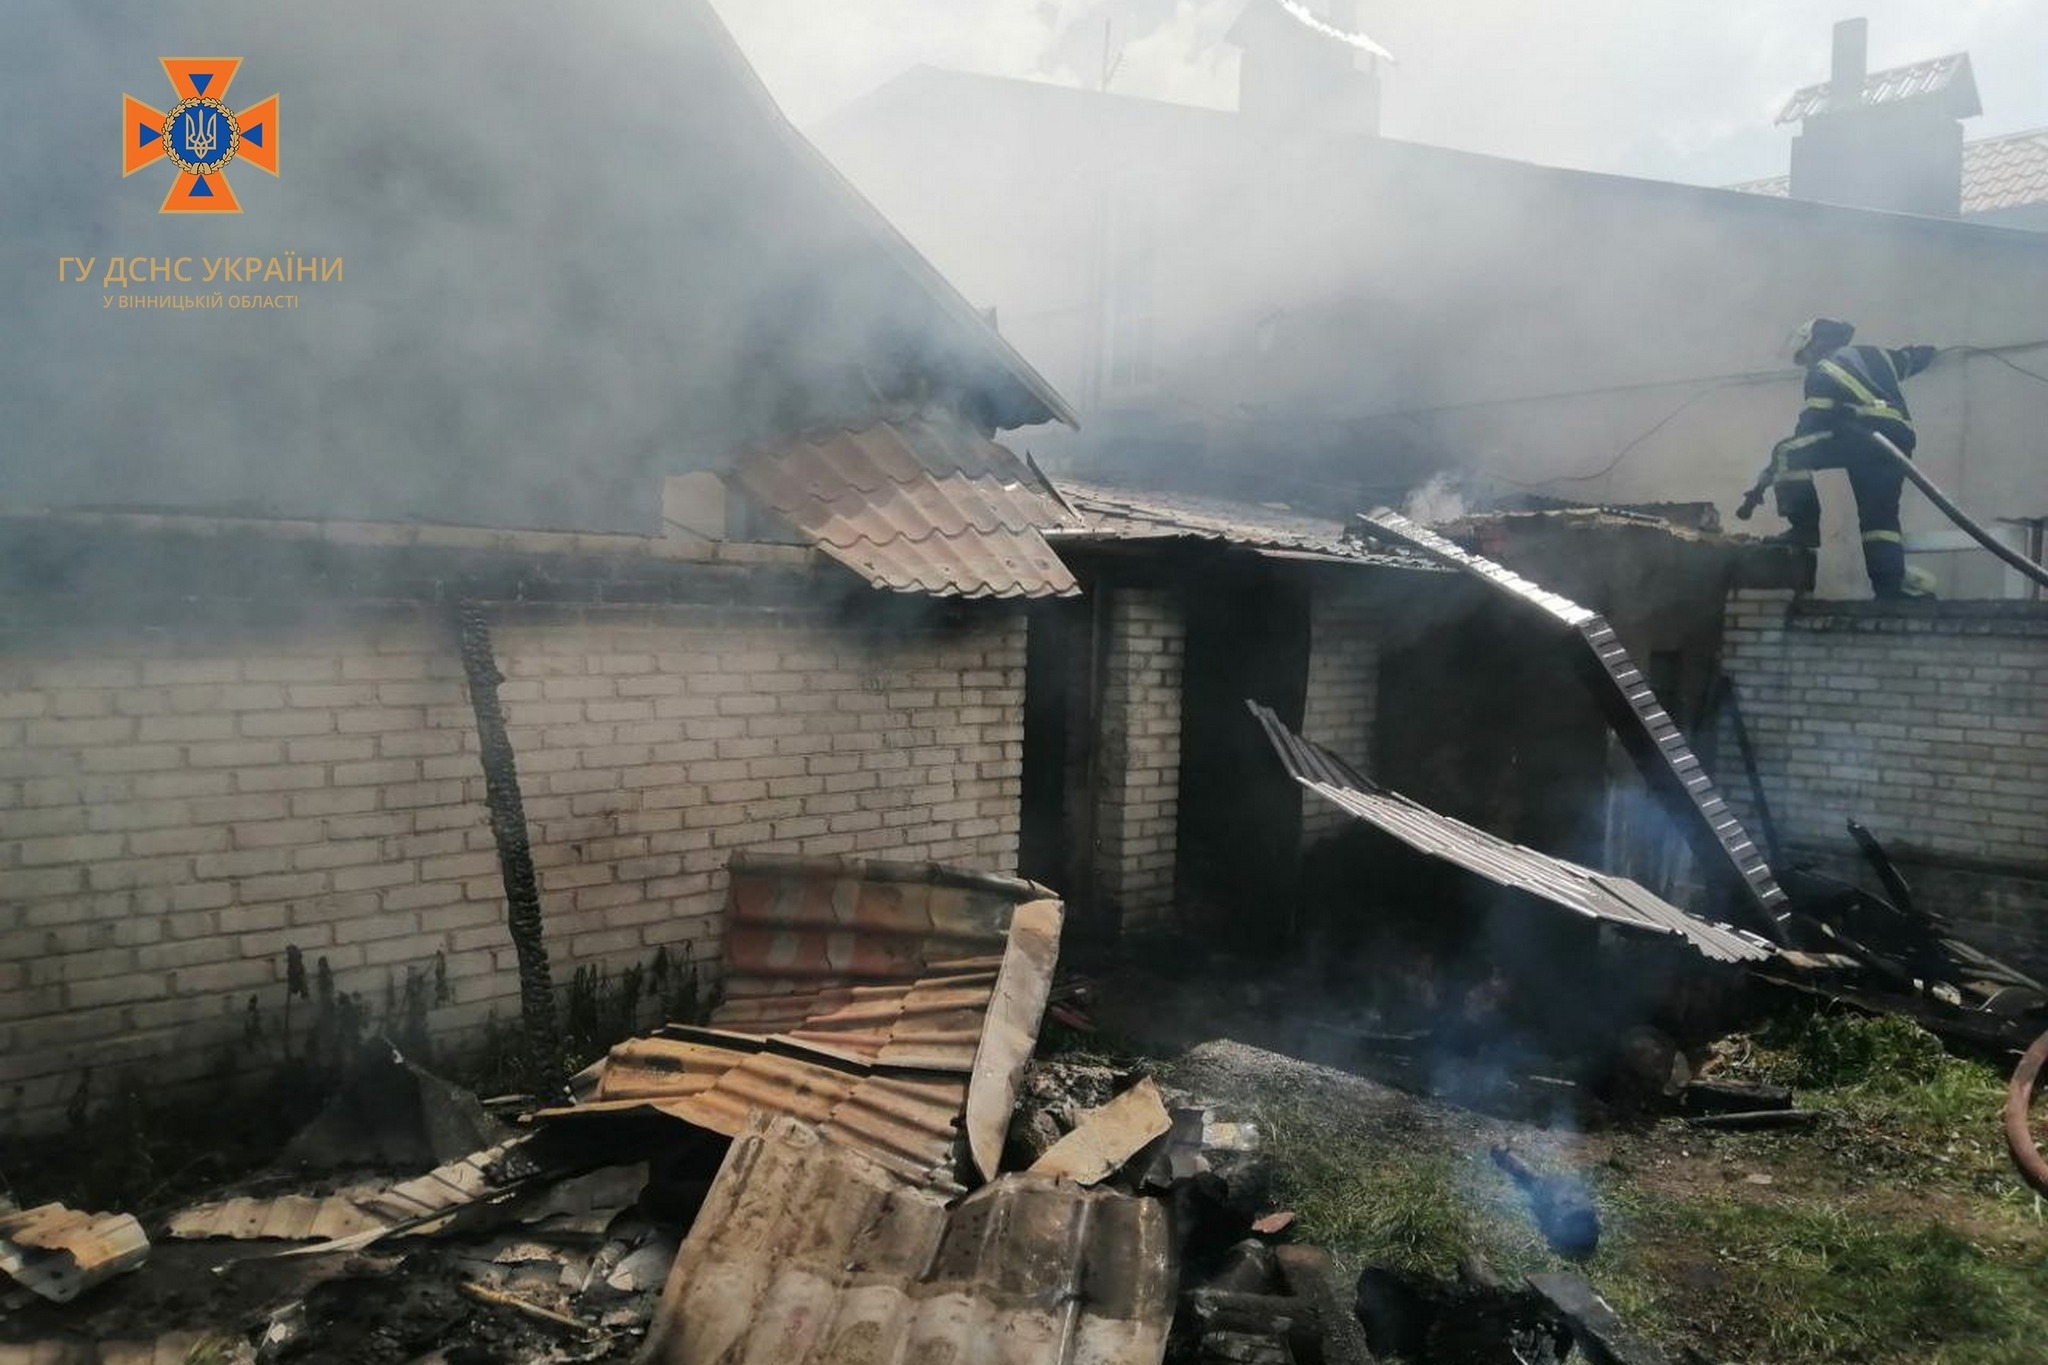 У селі Хмільницького району згоріла господарська споруда з реманентом